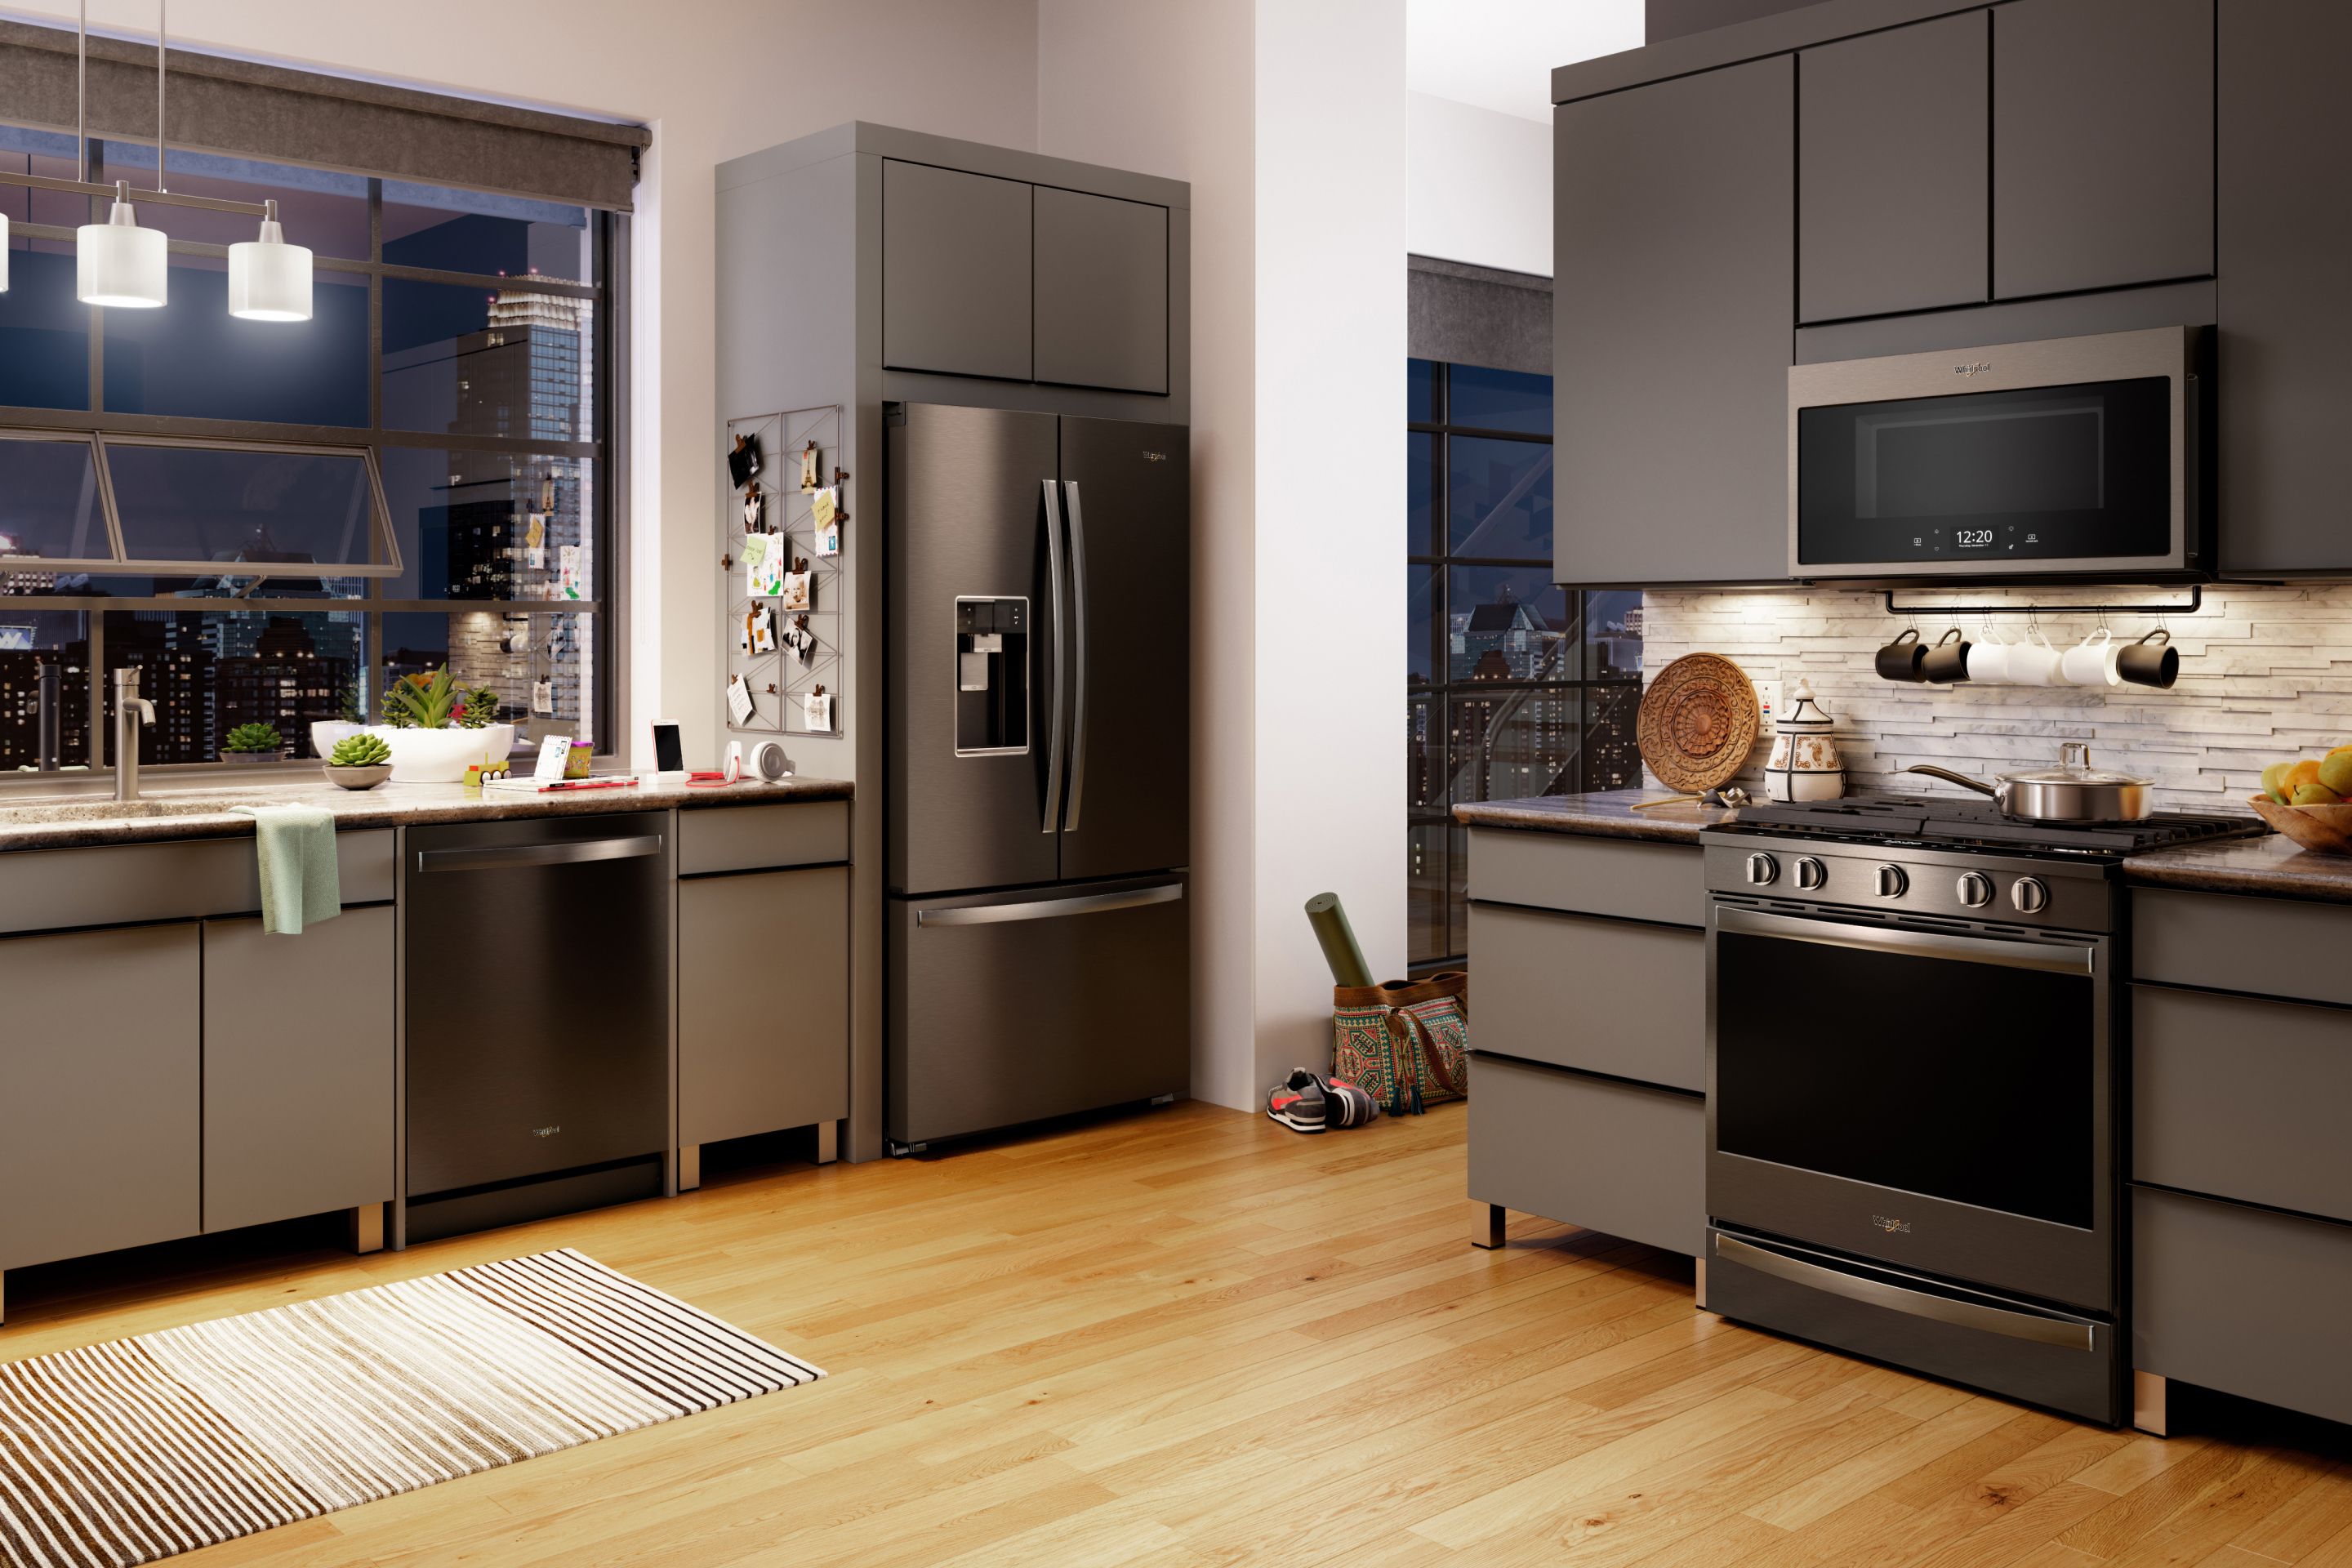 kitchen appliances for kitchen design